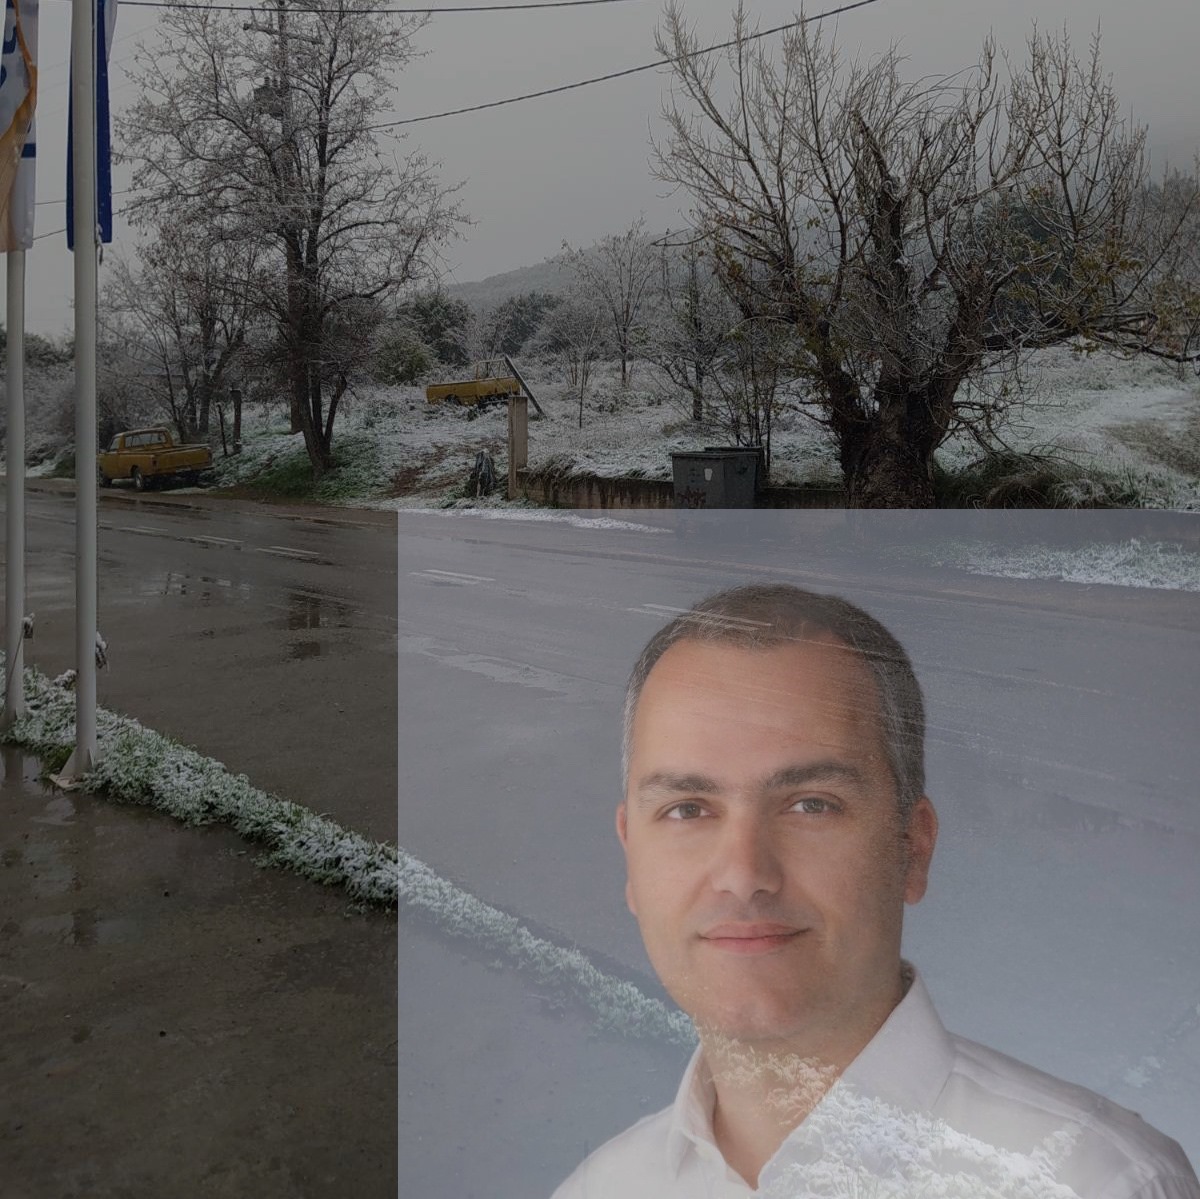 Κακοκαιρία – Αντιπεριφερειάρχης της Π.Ε. Εύβοιας στο evima.gr: Ανοικτό το οδικό δίκτυο, αλυσίδες στο τμήμα Ψαχνά-Προκόπι